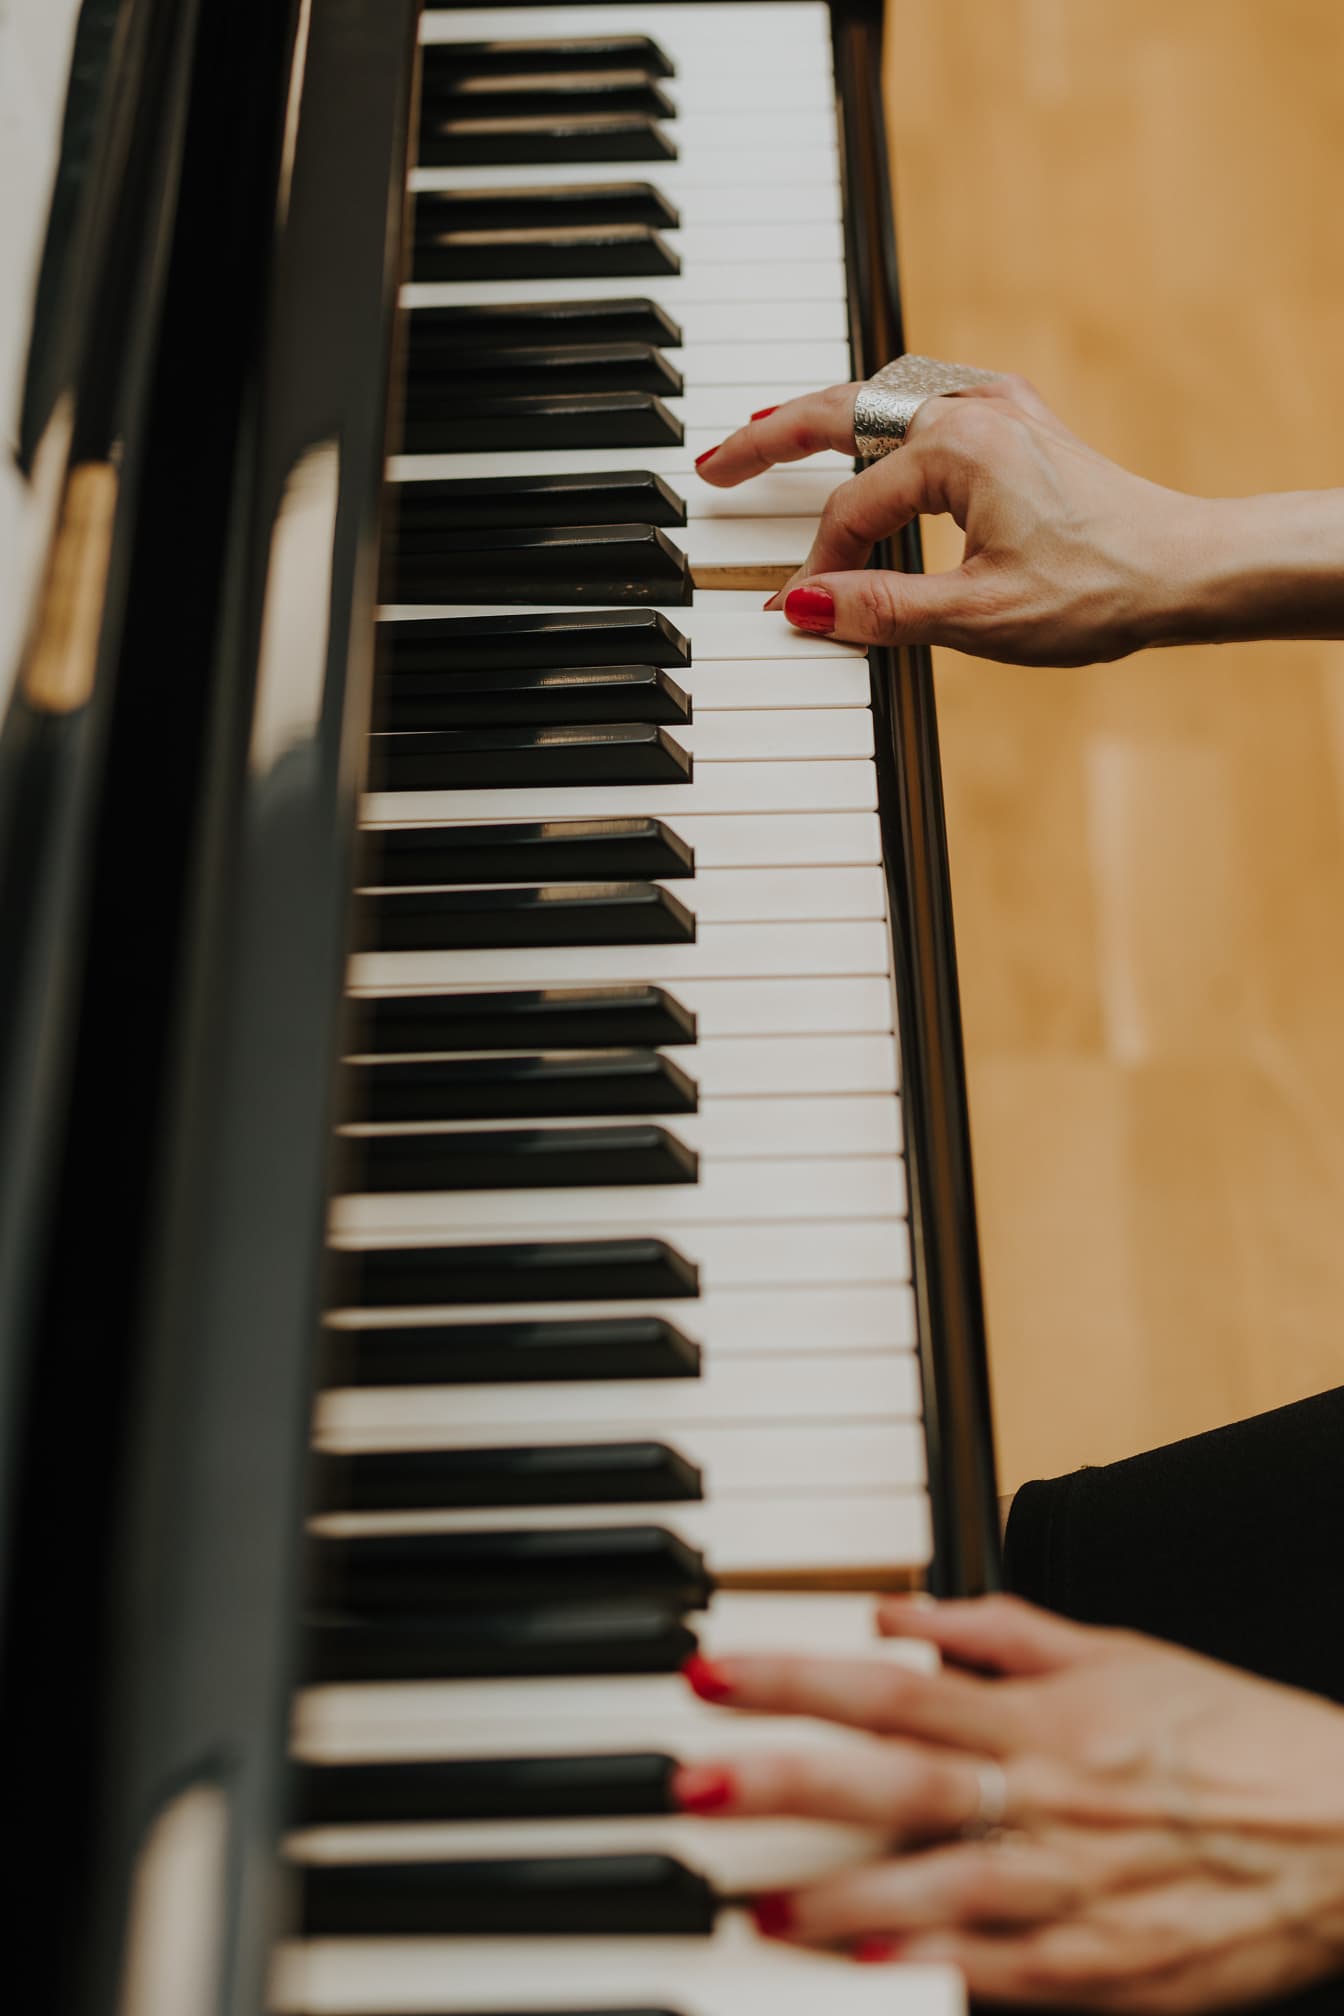 Pianis memainkan instrumen piano close-up tangan